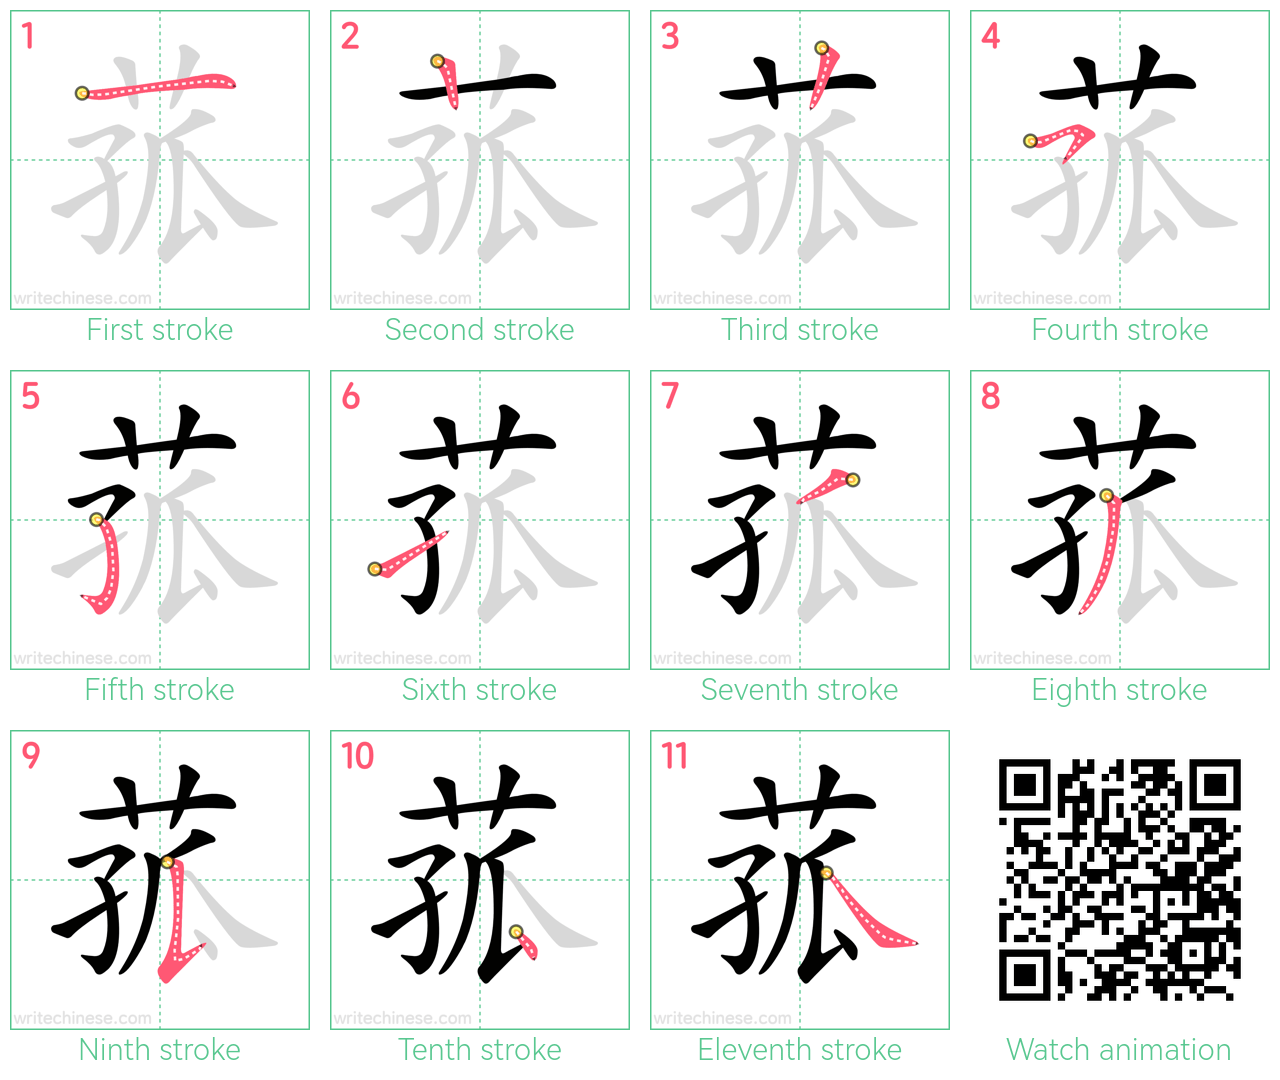 菰 step-by-step stroke order diagrams